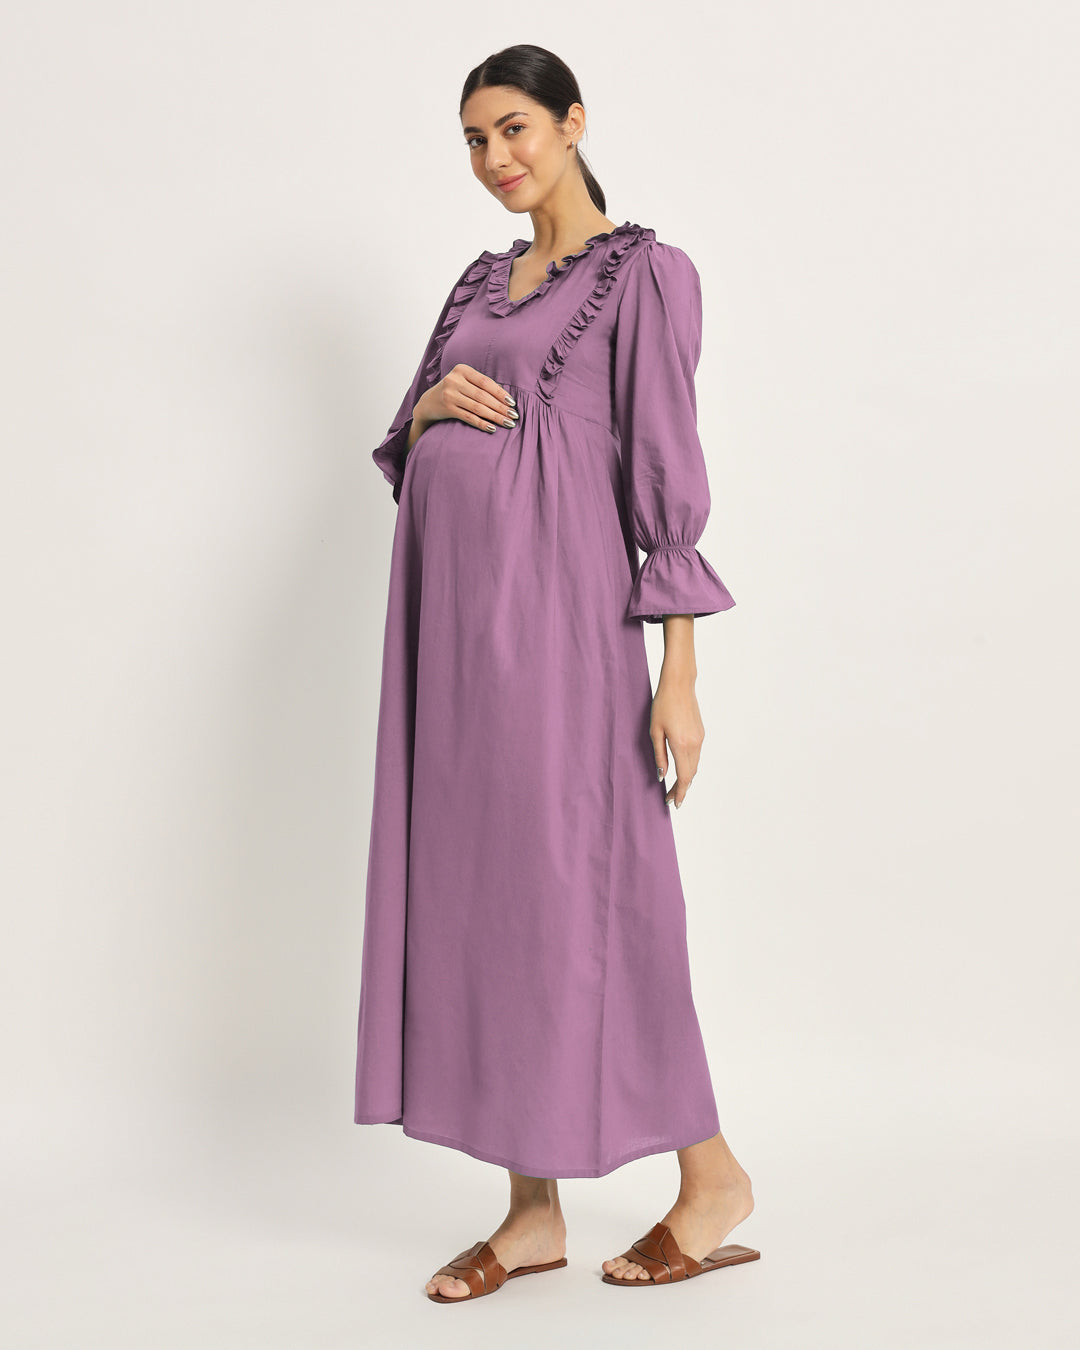 Combo: Iris Pink & Sage Green Functional Flow Maternity & Nursing Dress - Set of 2